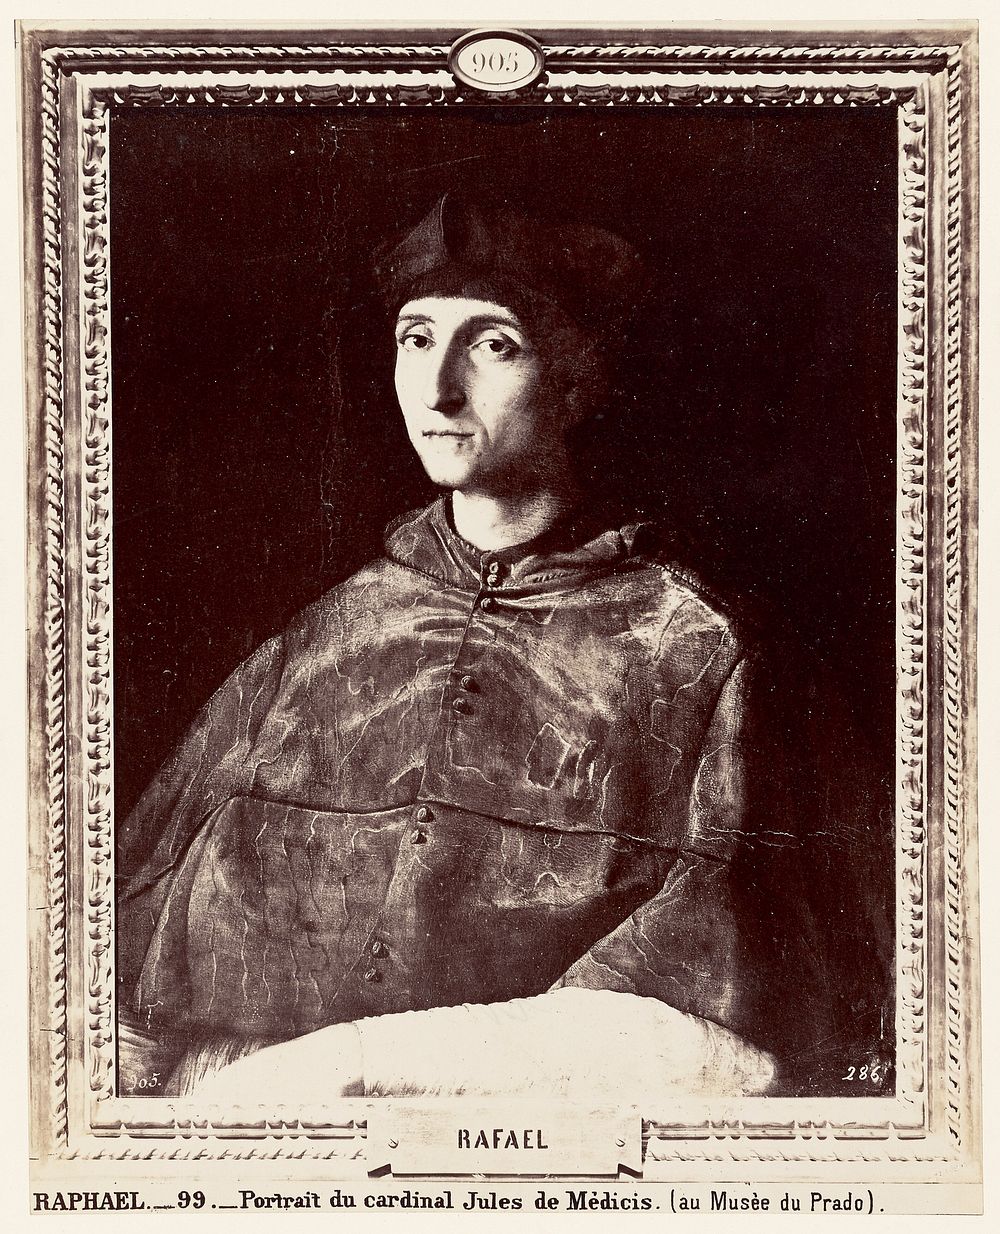 Raphael. Portrait du cardinal Jules de Medicis (au Musee du Prado) by Juan Laurent